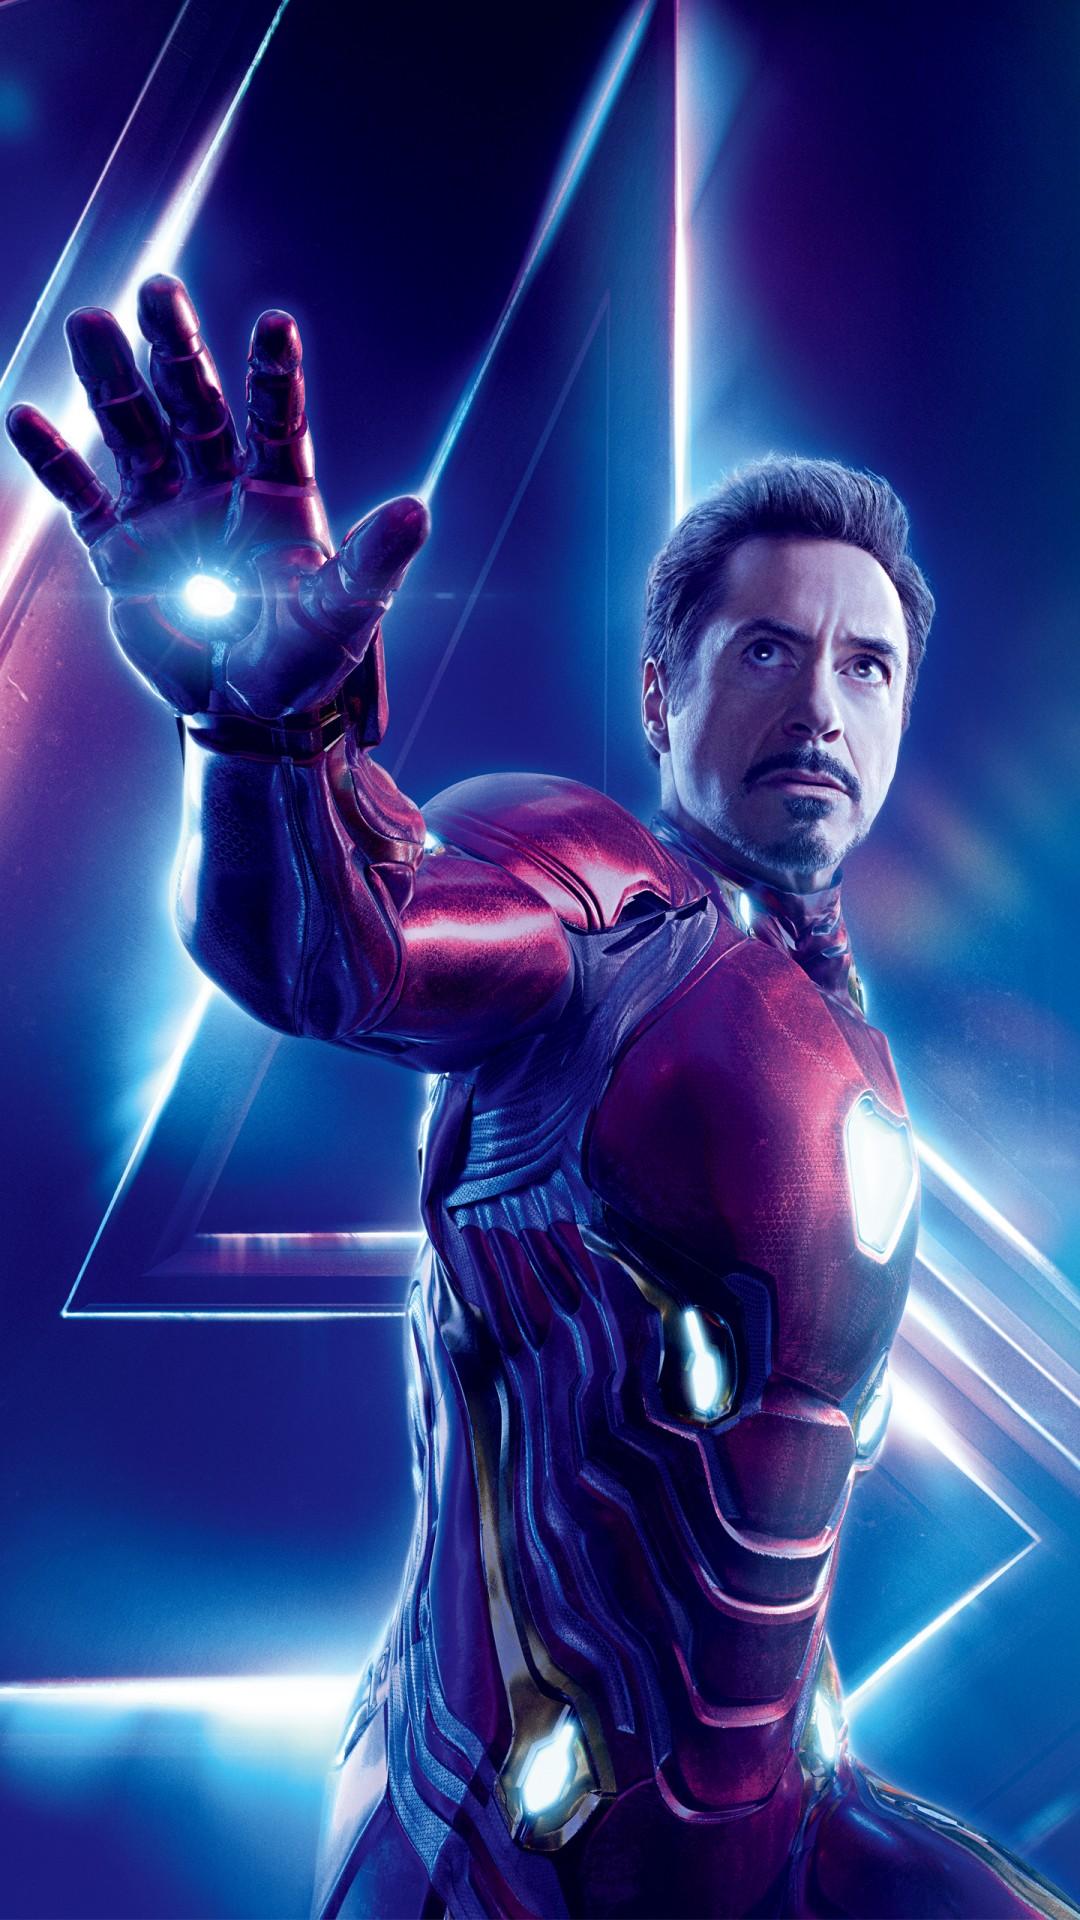 Iron Man in Avengers Infinity War 4K 8K Wallpaper. HD